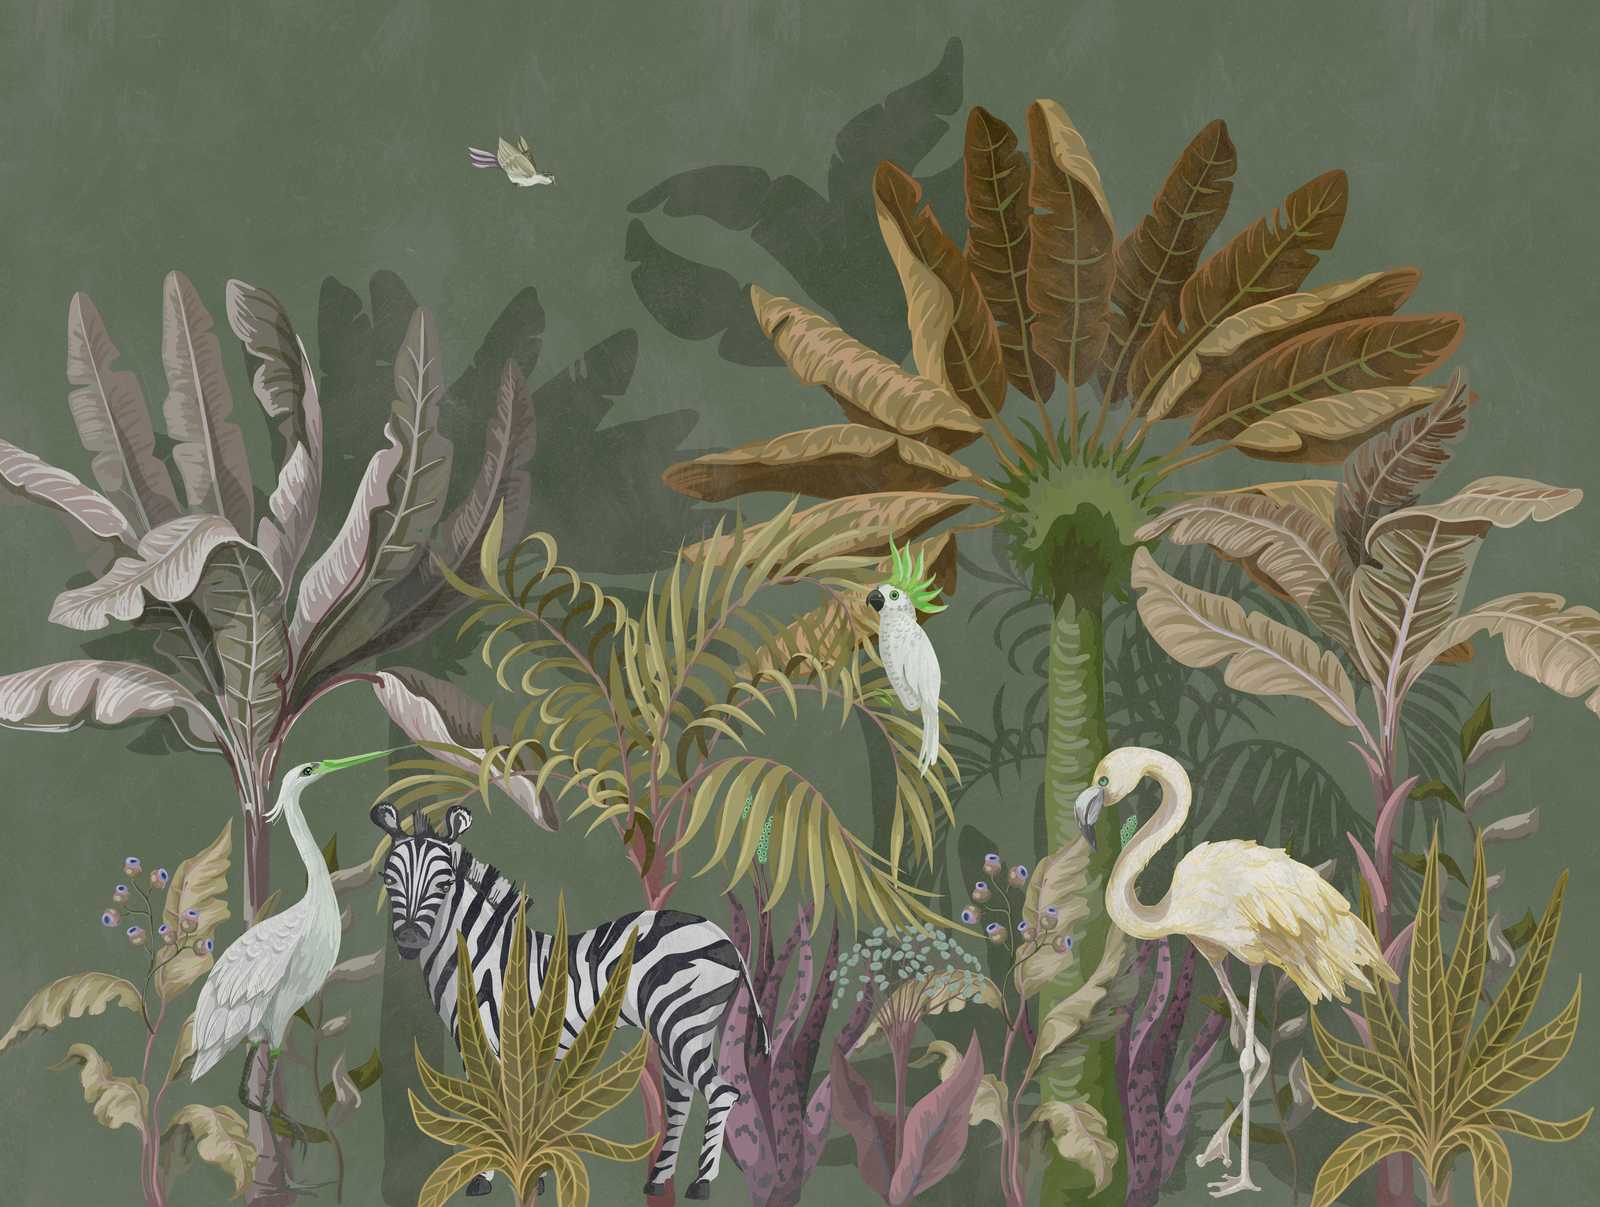             papel pintado novedad | papel pintado motivo selva animales y plantas
        